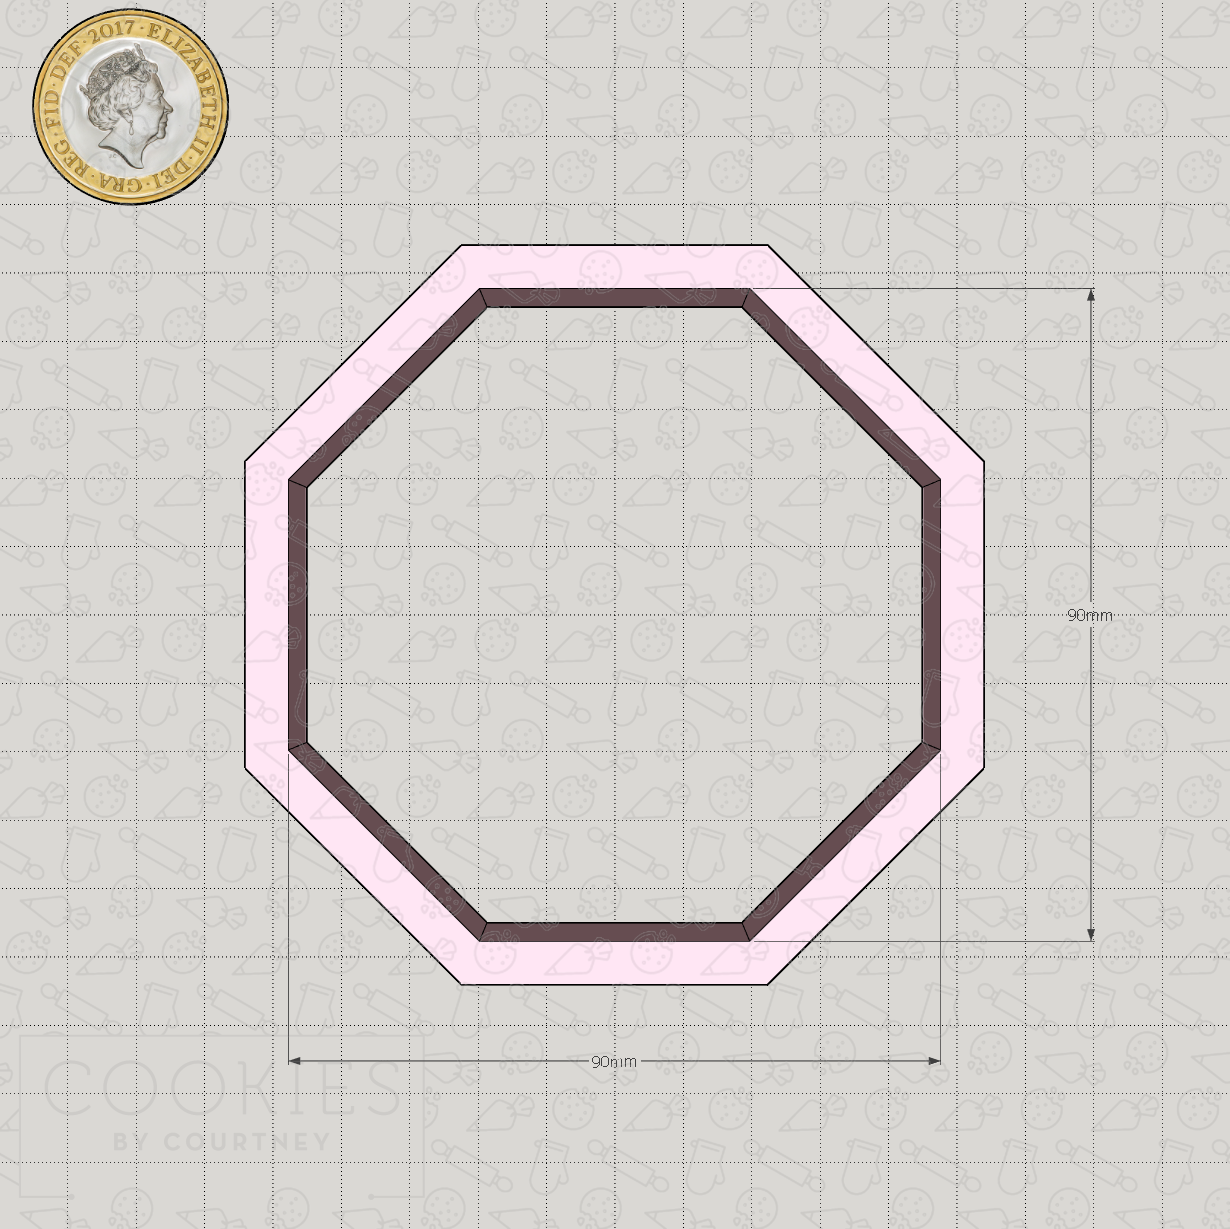 Basic Shapes - Octagon